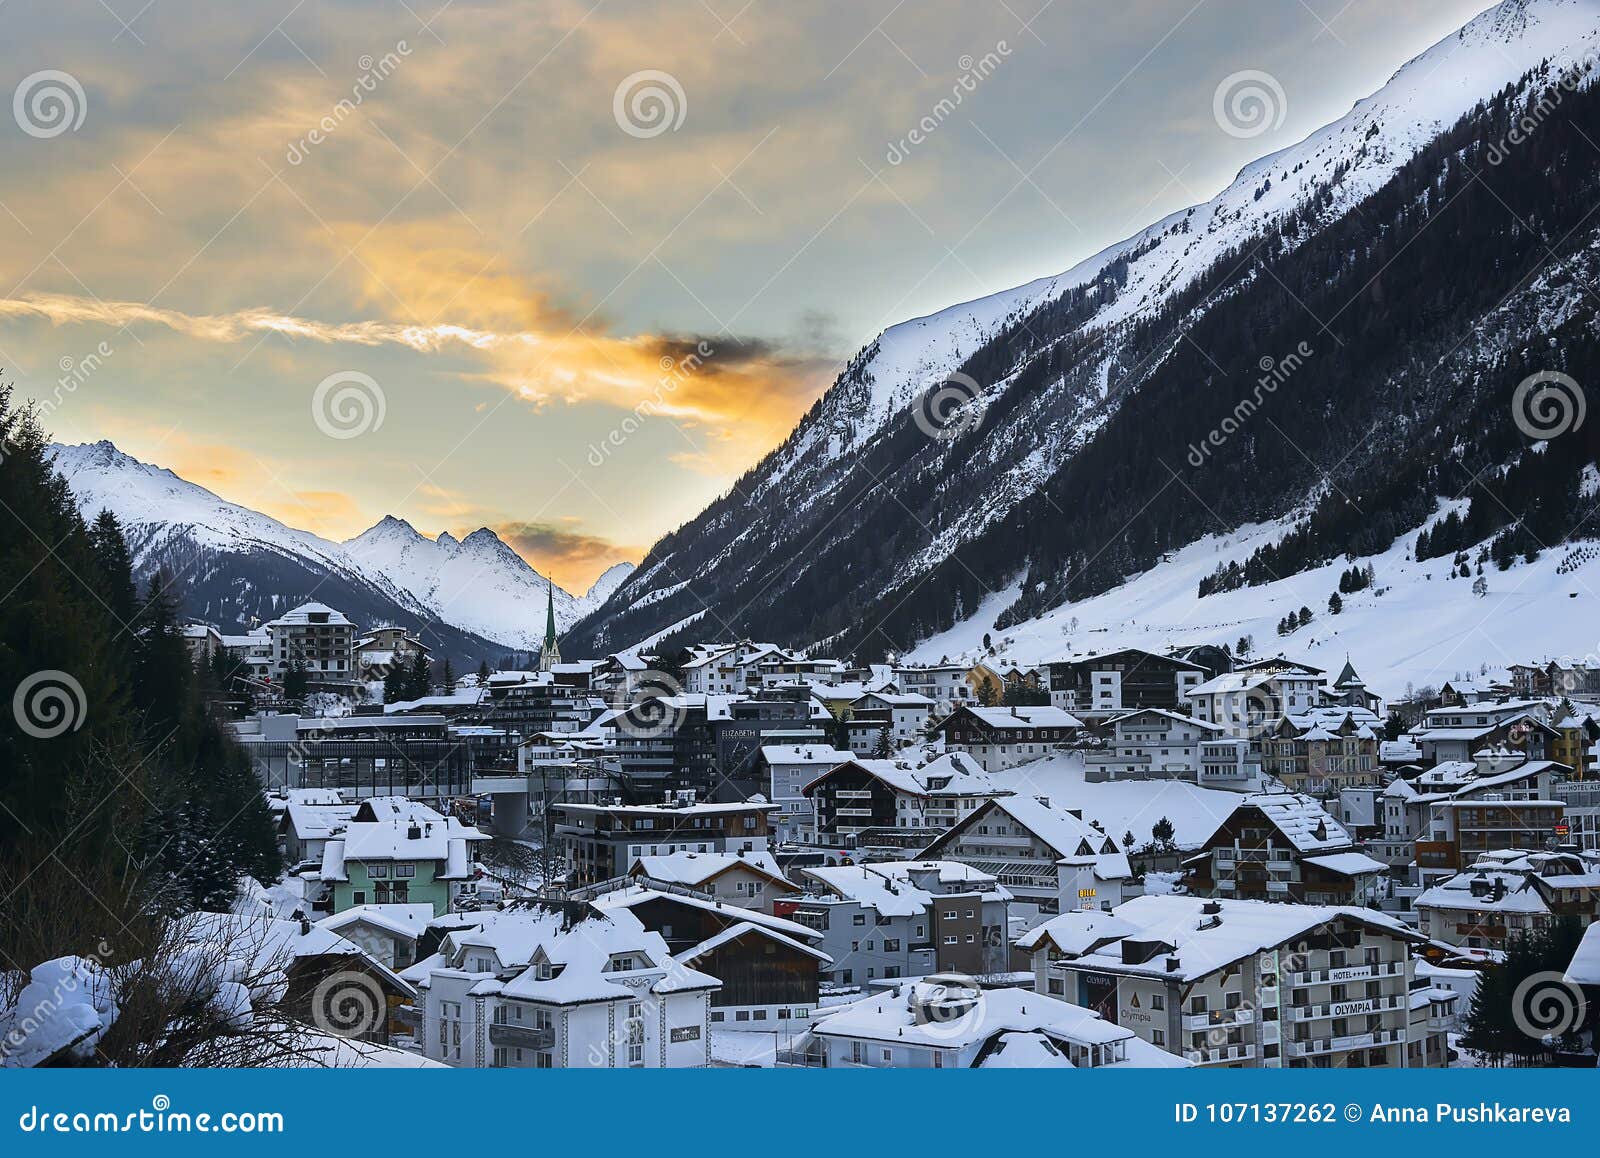 Sonnenuntergang In Den Bergen Winterabend Im Skiort Ischgl In Tirol Alpen Redaktionelles Stockfotografie Bild Von Bergen Skiort